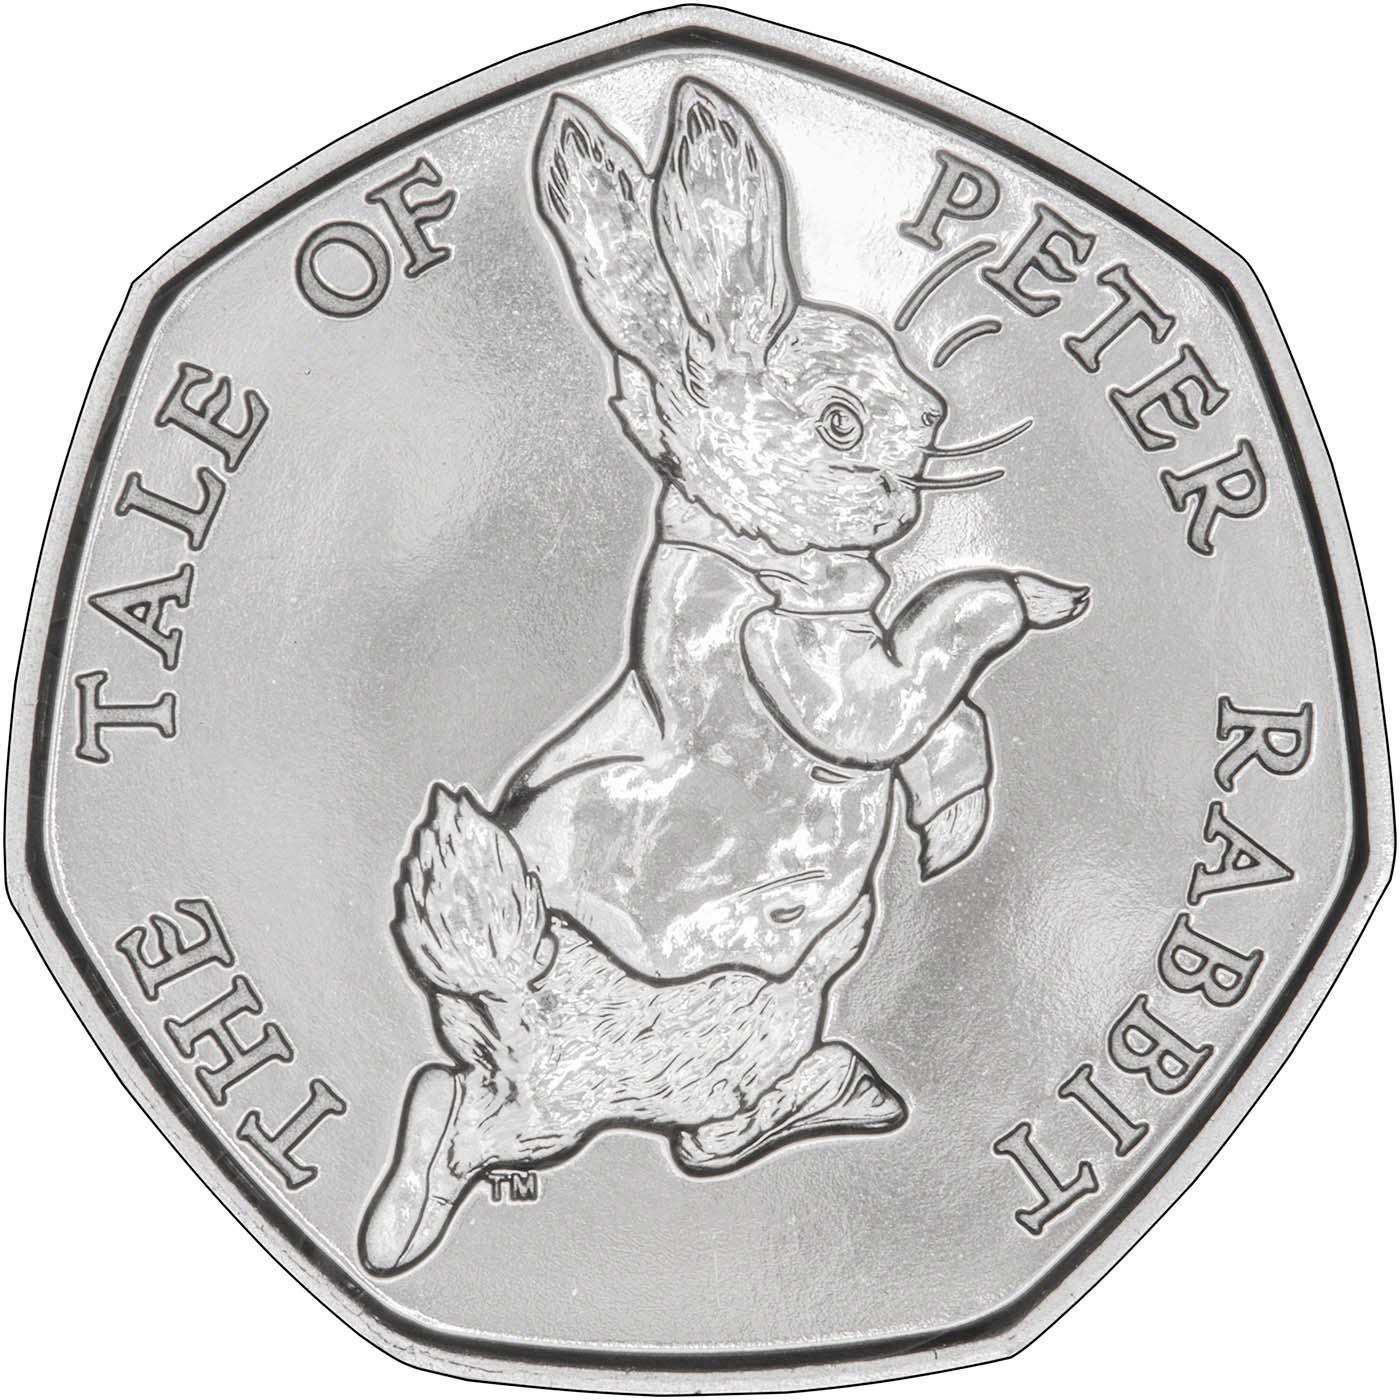 Peter Rabbit Coin & Sculpture